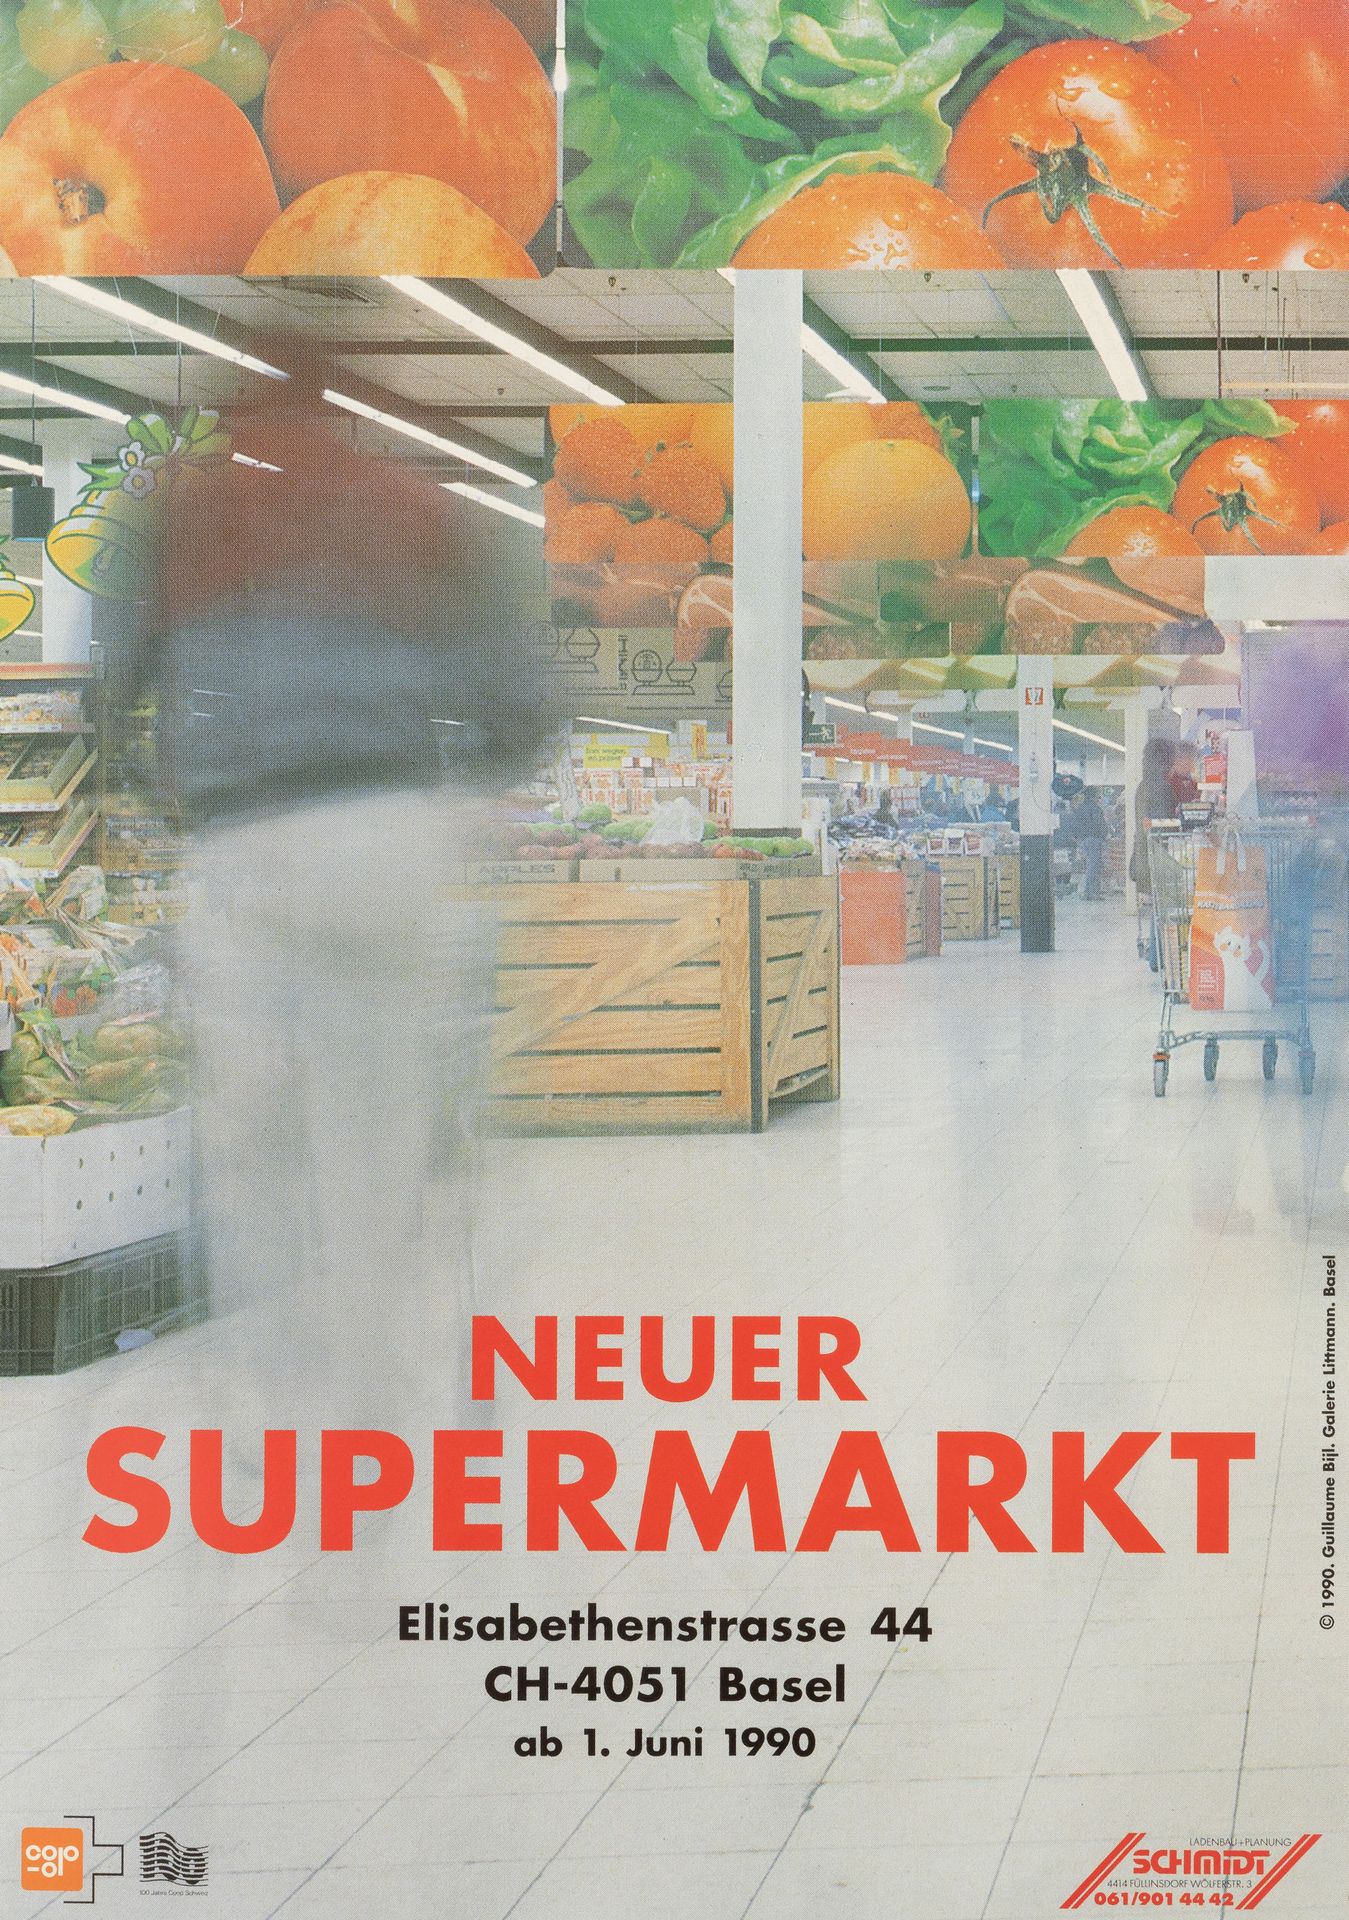 GUILLAUME BIJL (°1946) Neuer Supermarkt", 1990. 


Stampa serigrafica. Poster.

&hellip;